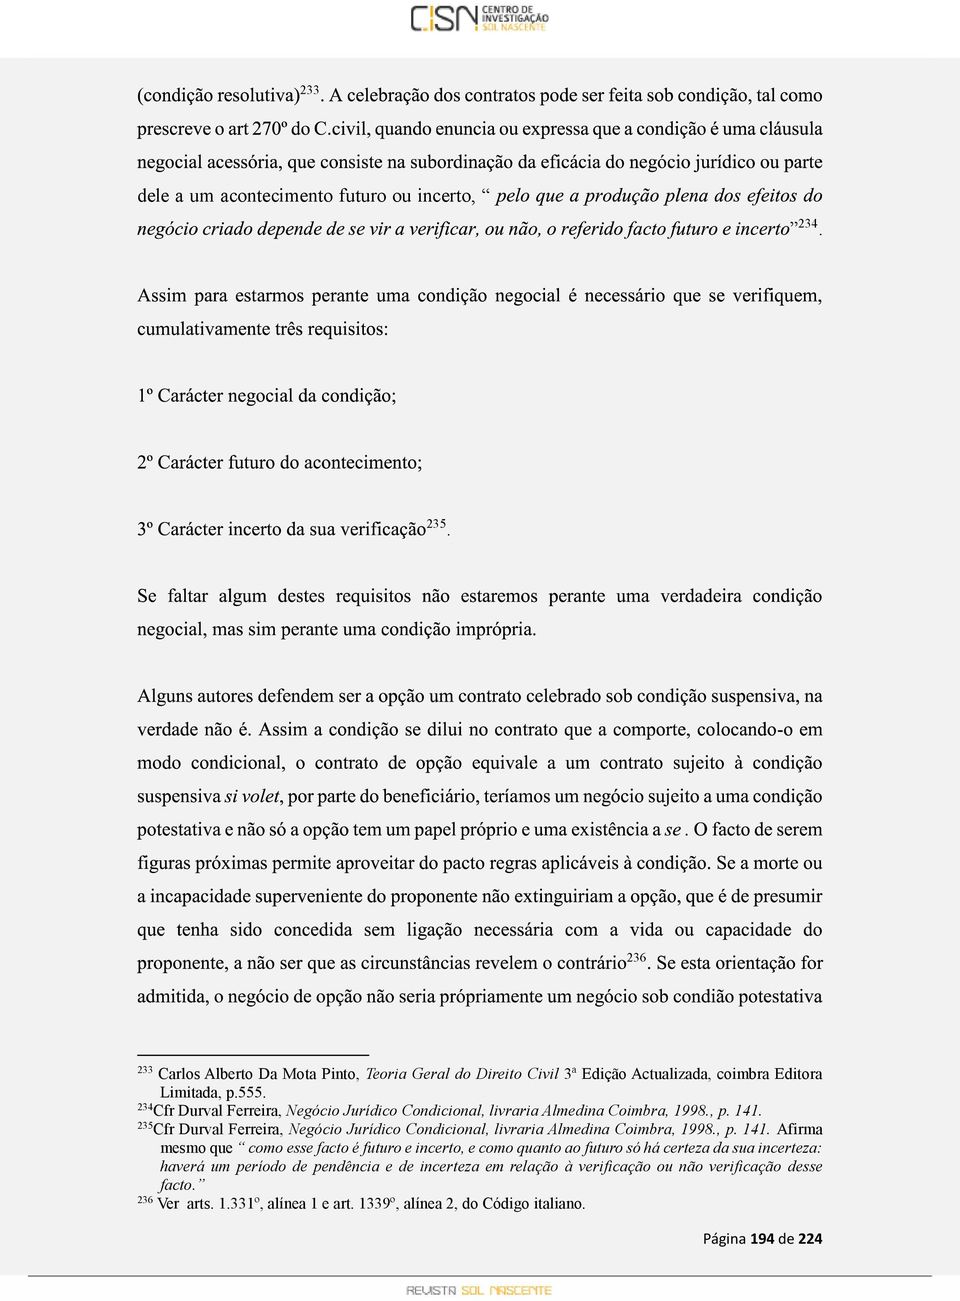 234 Cfr Durval Ferreira, Negócio Jurídico Condicional, livraria Almedina Coimbra, 1998., p. 141.